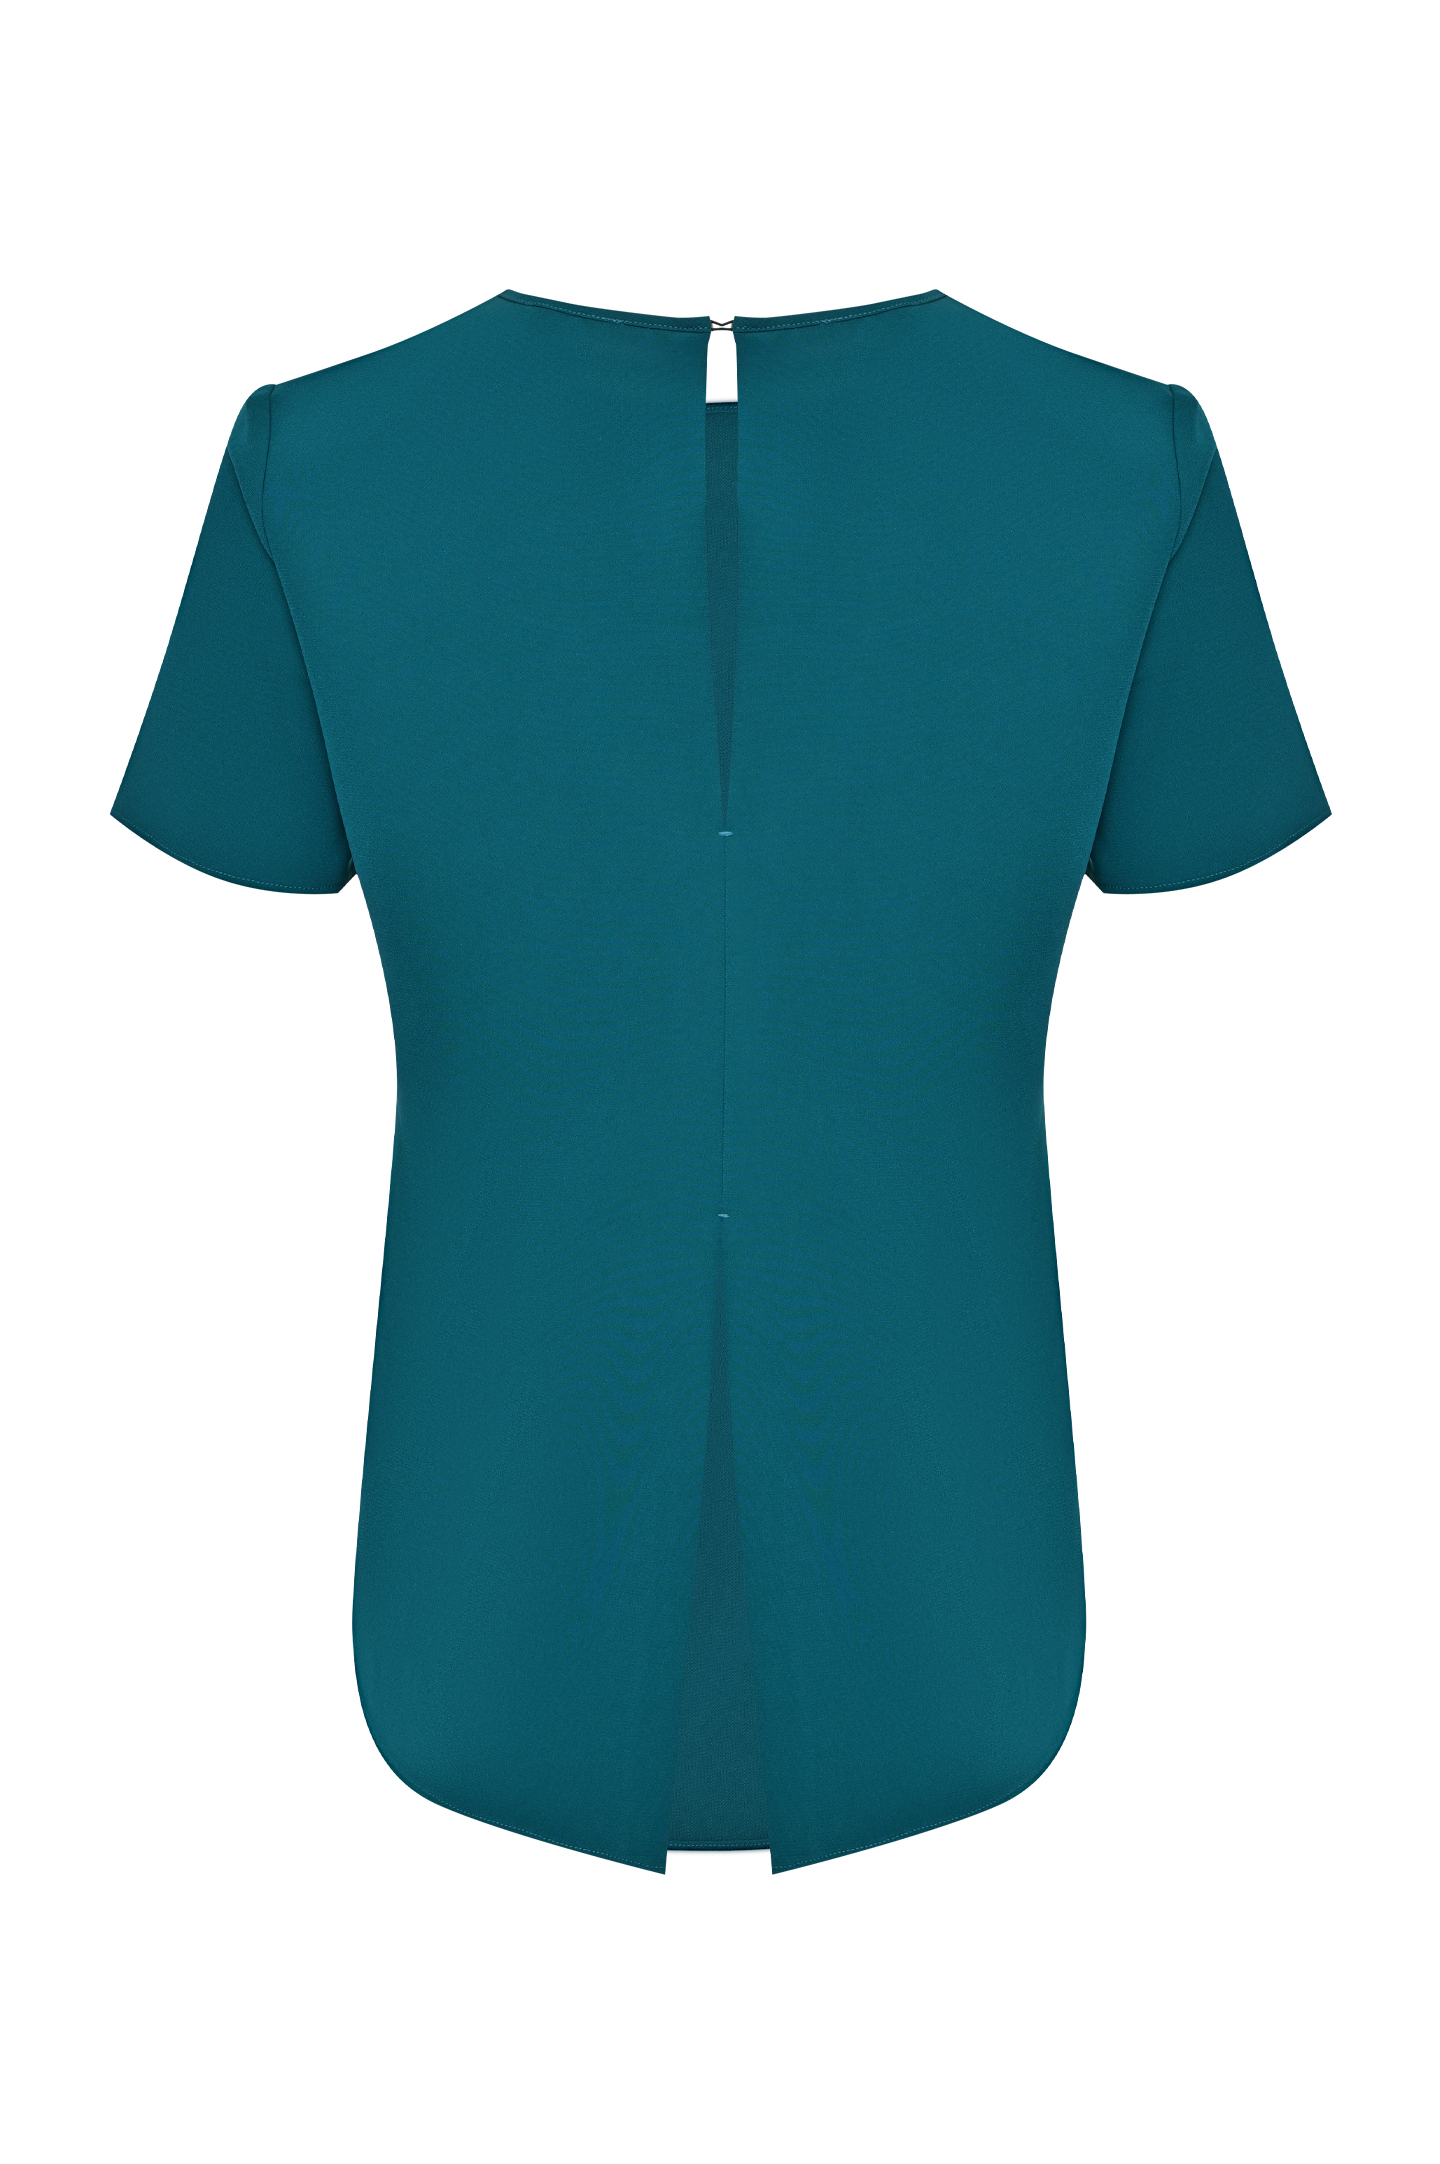 Блуза P.A.R.O.S.H. D310235X PIRATES, цвет: Бирюзовый, Женский